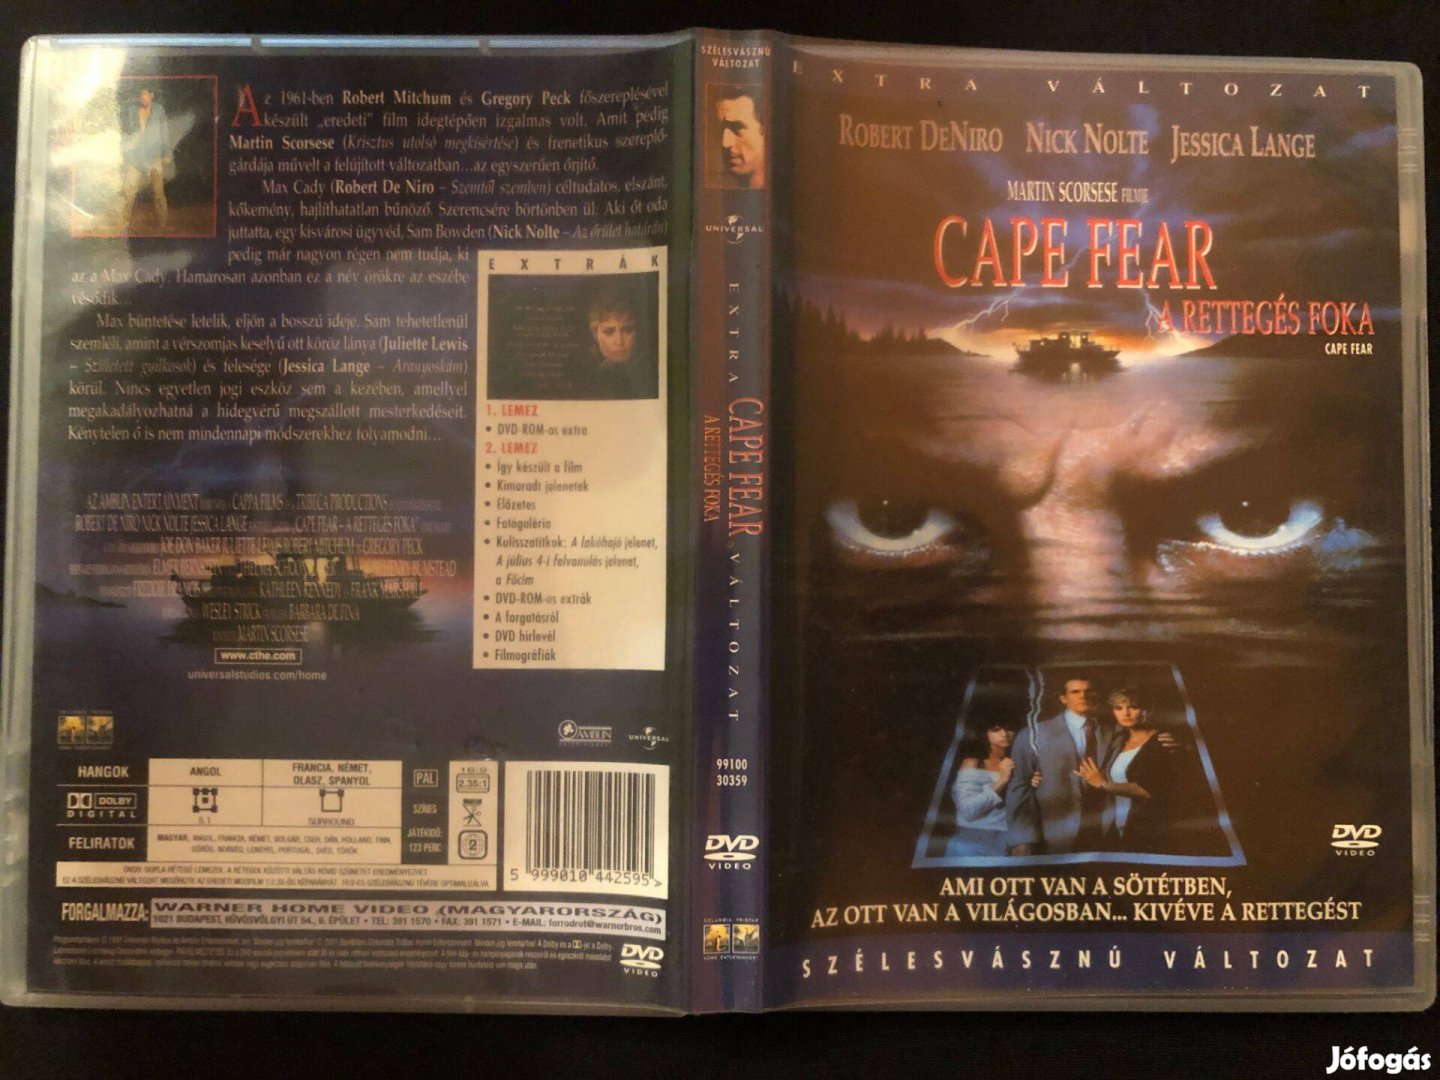 Cape Fear A rettegés foka DVD (karcmentes, duplalemezes)